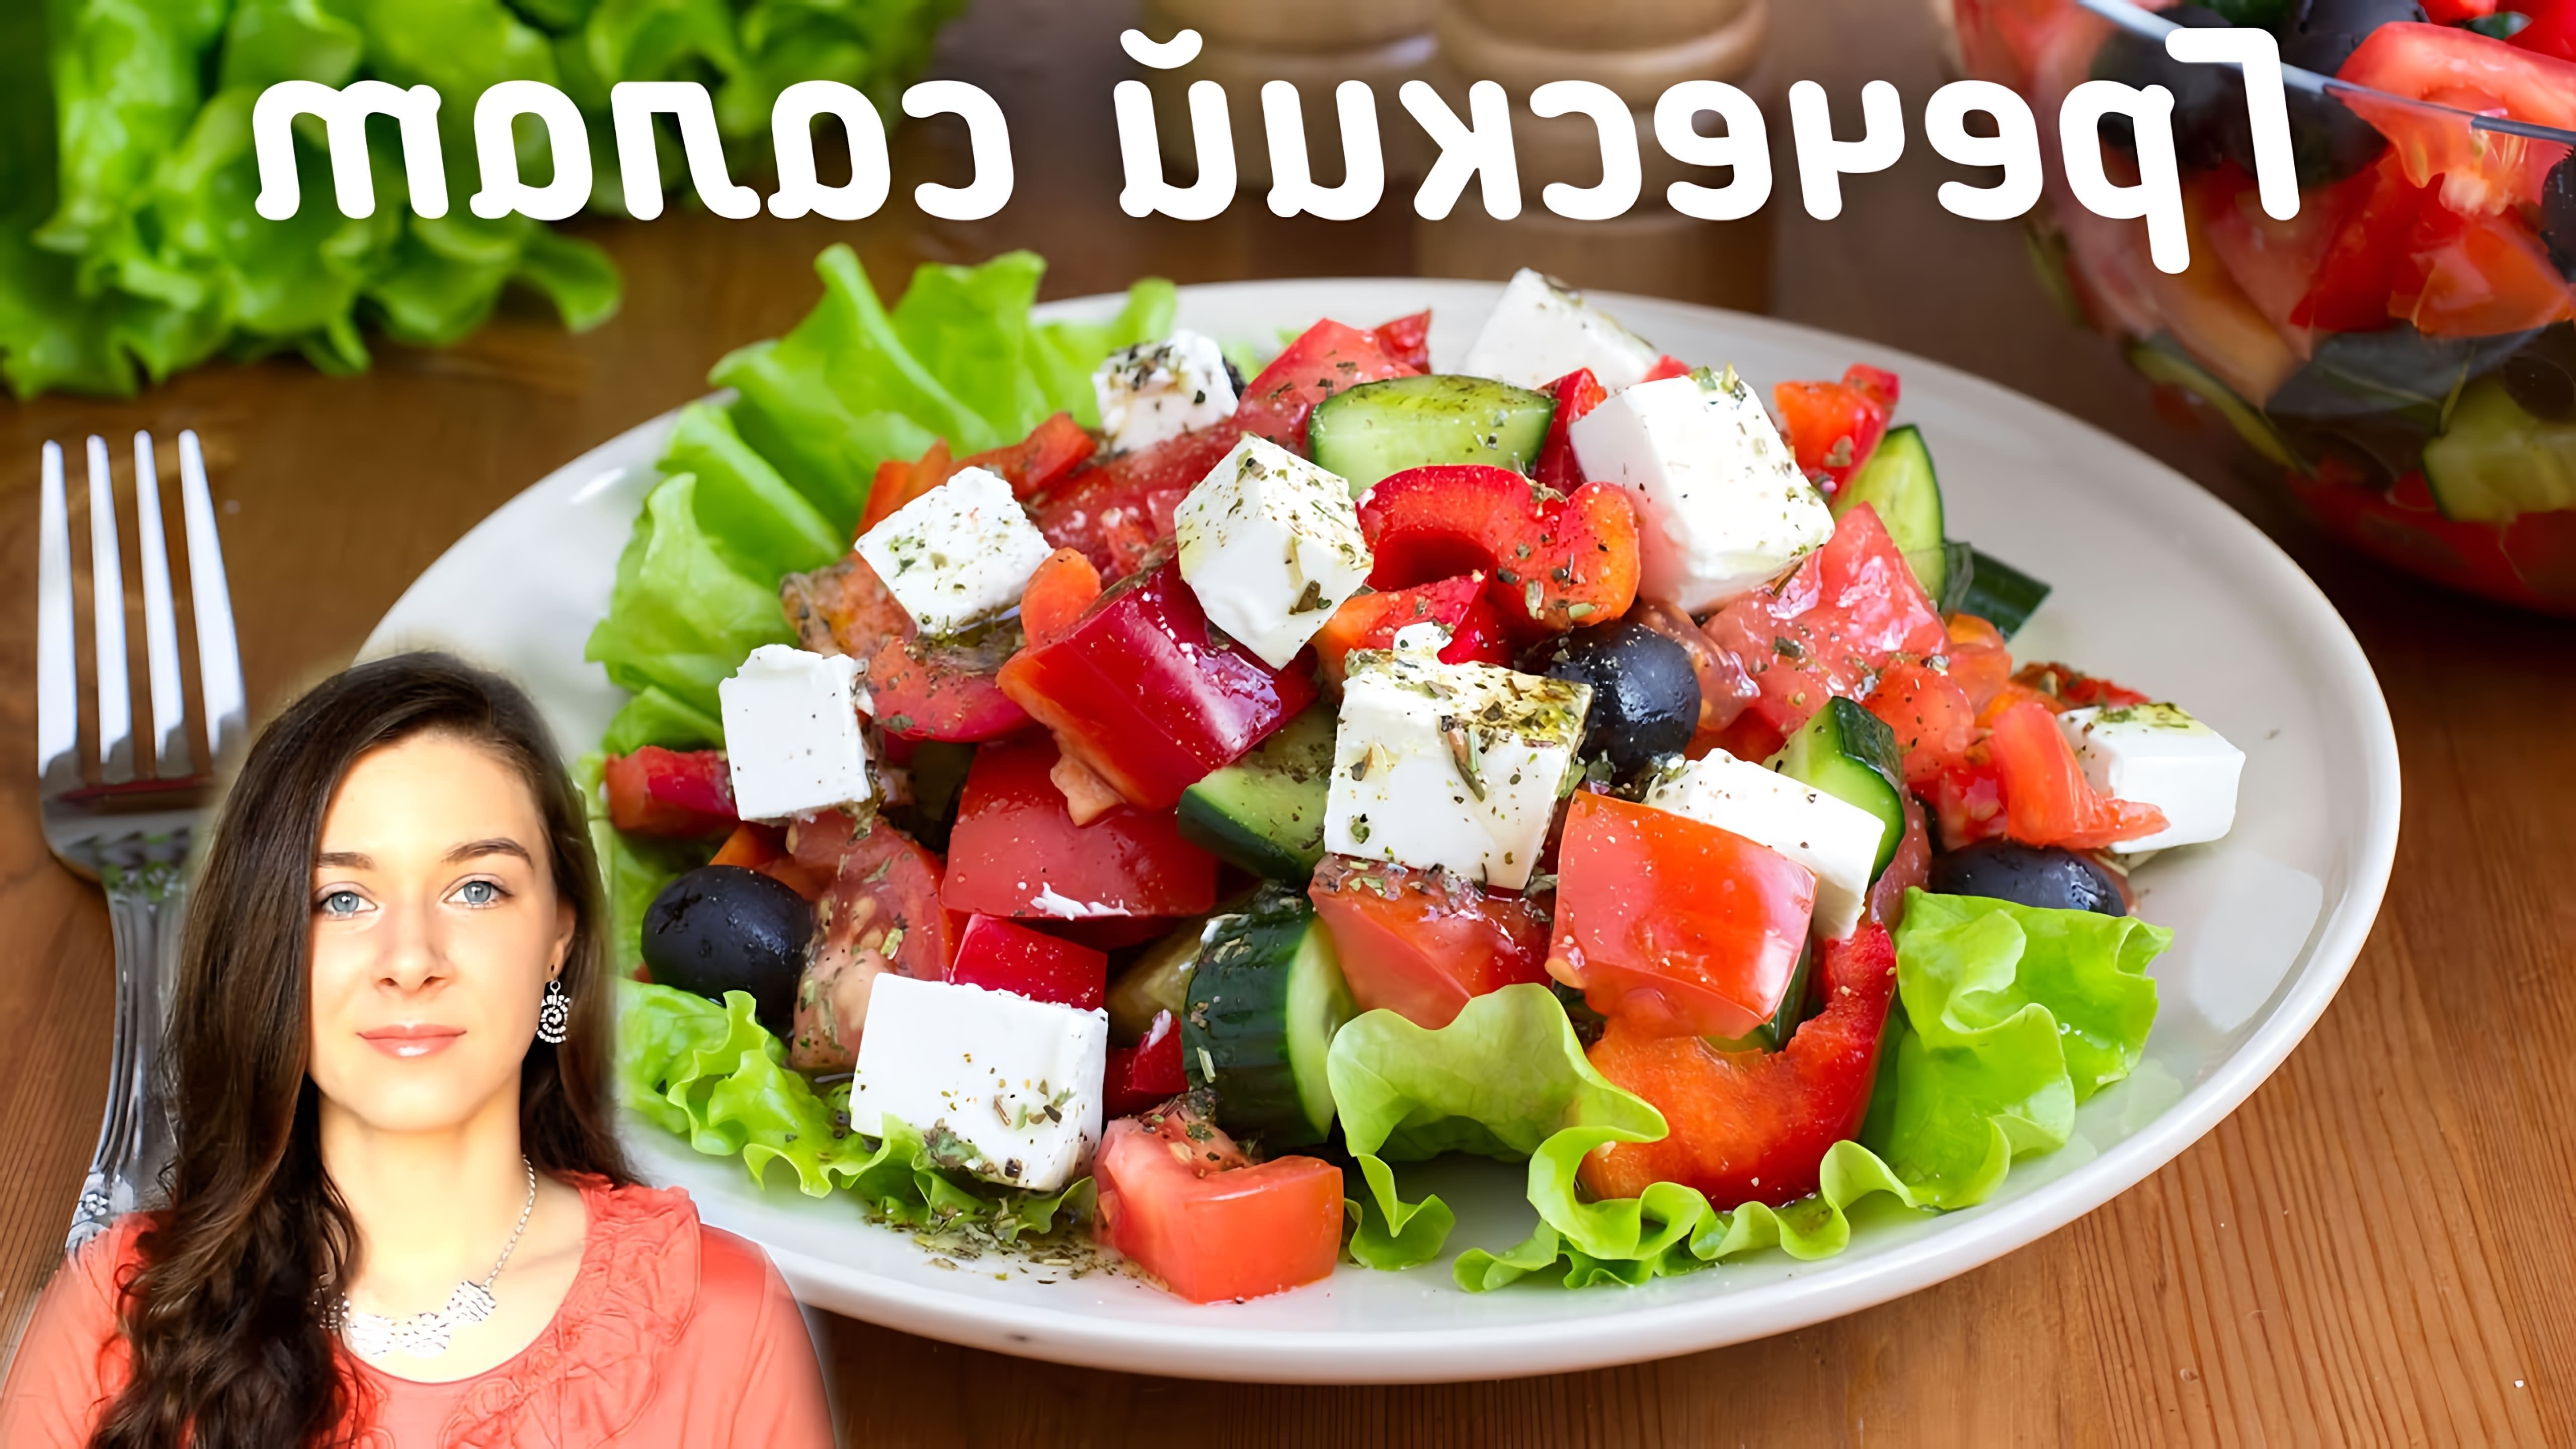 В этом видео Елена показывает, как приготовить греческий салат с необычной заправкой